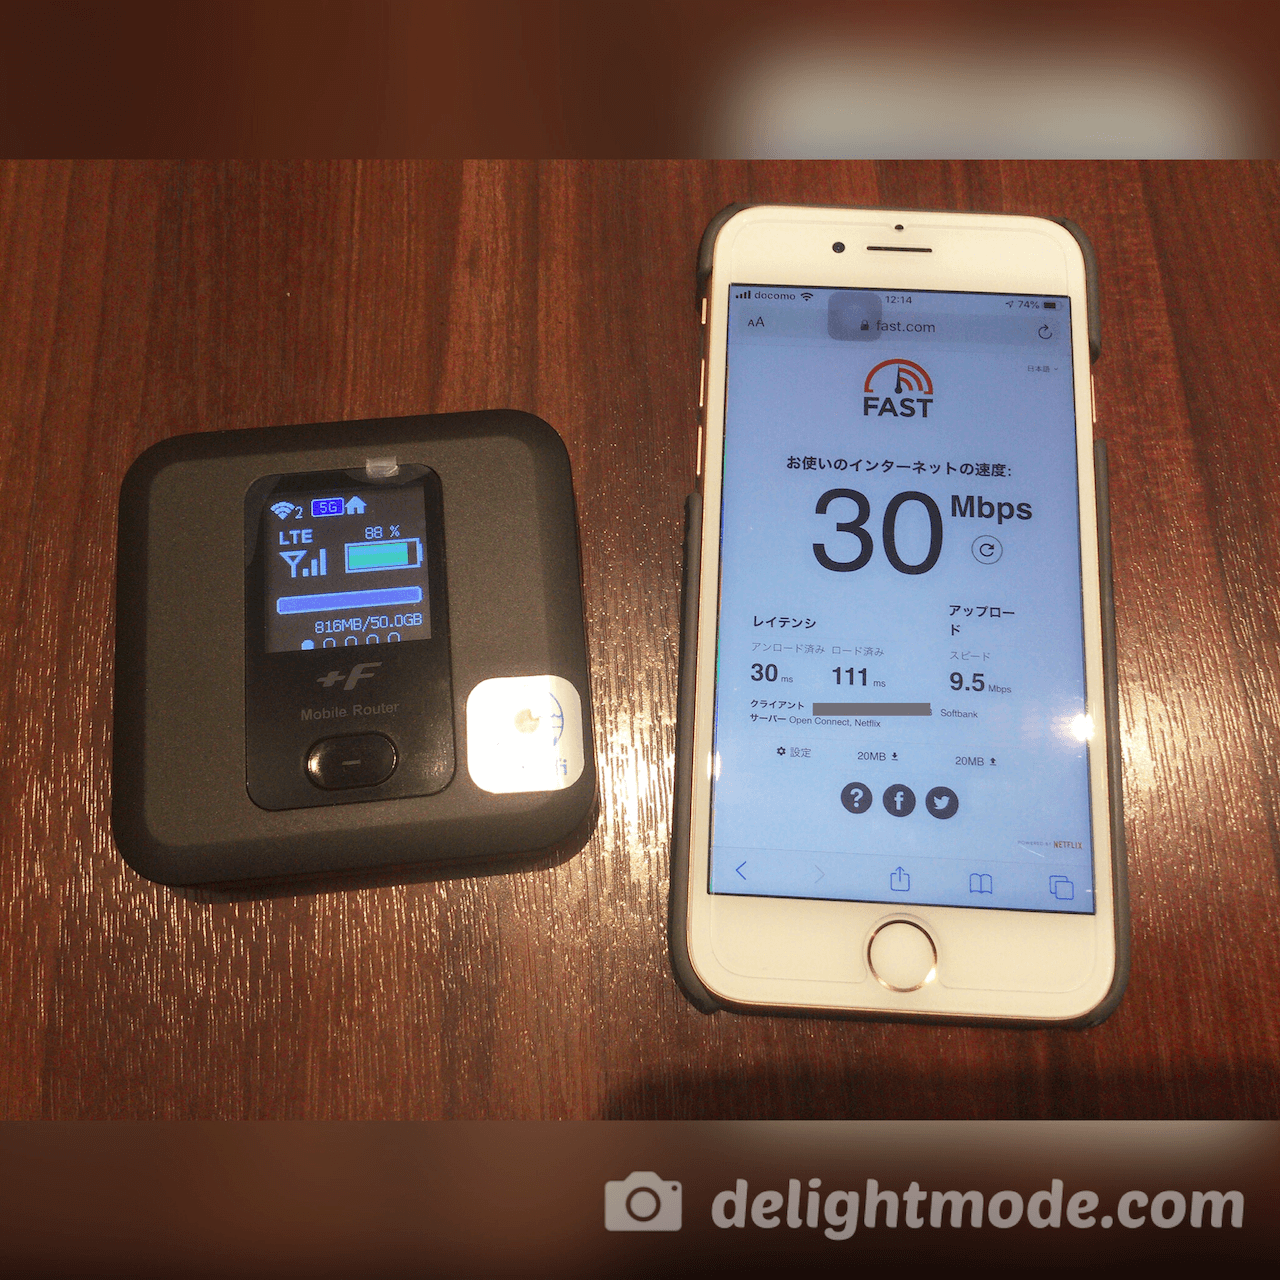 鳥取駅の構内にある飲食店で昼間に計測。FUJI Wifiのソフトバンク回線モバイルルーターでは30Mbpsの速度が出ていました。